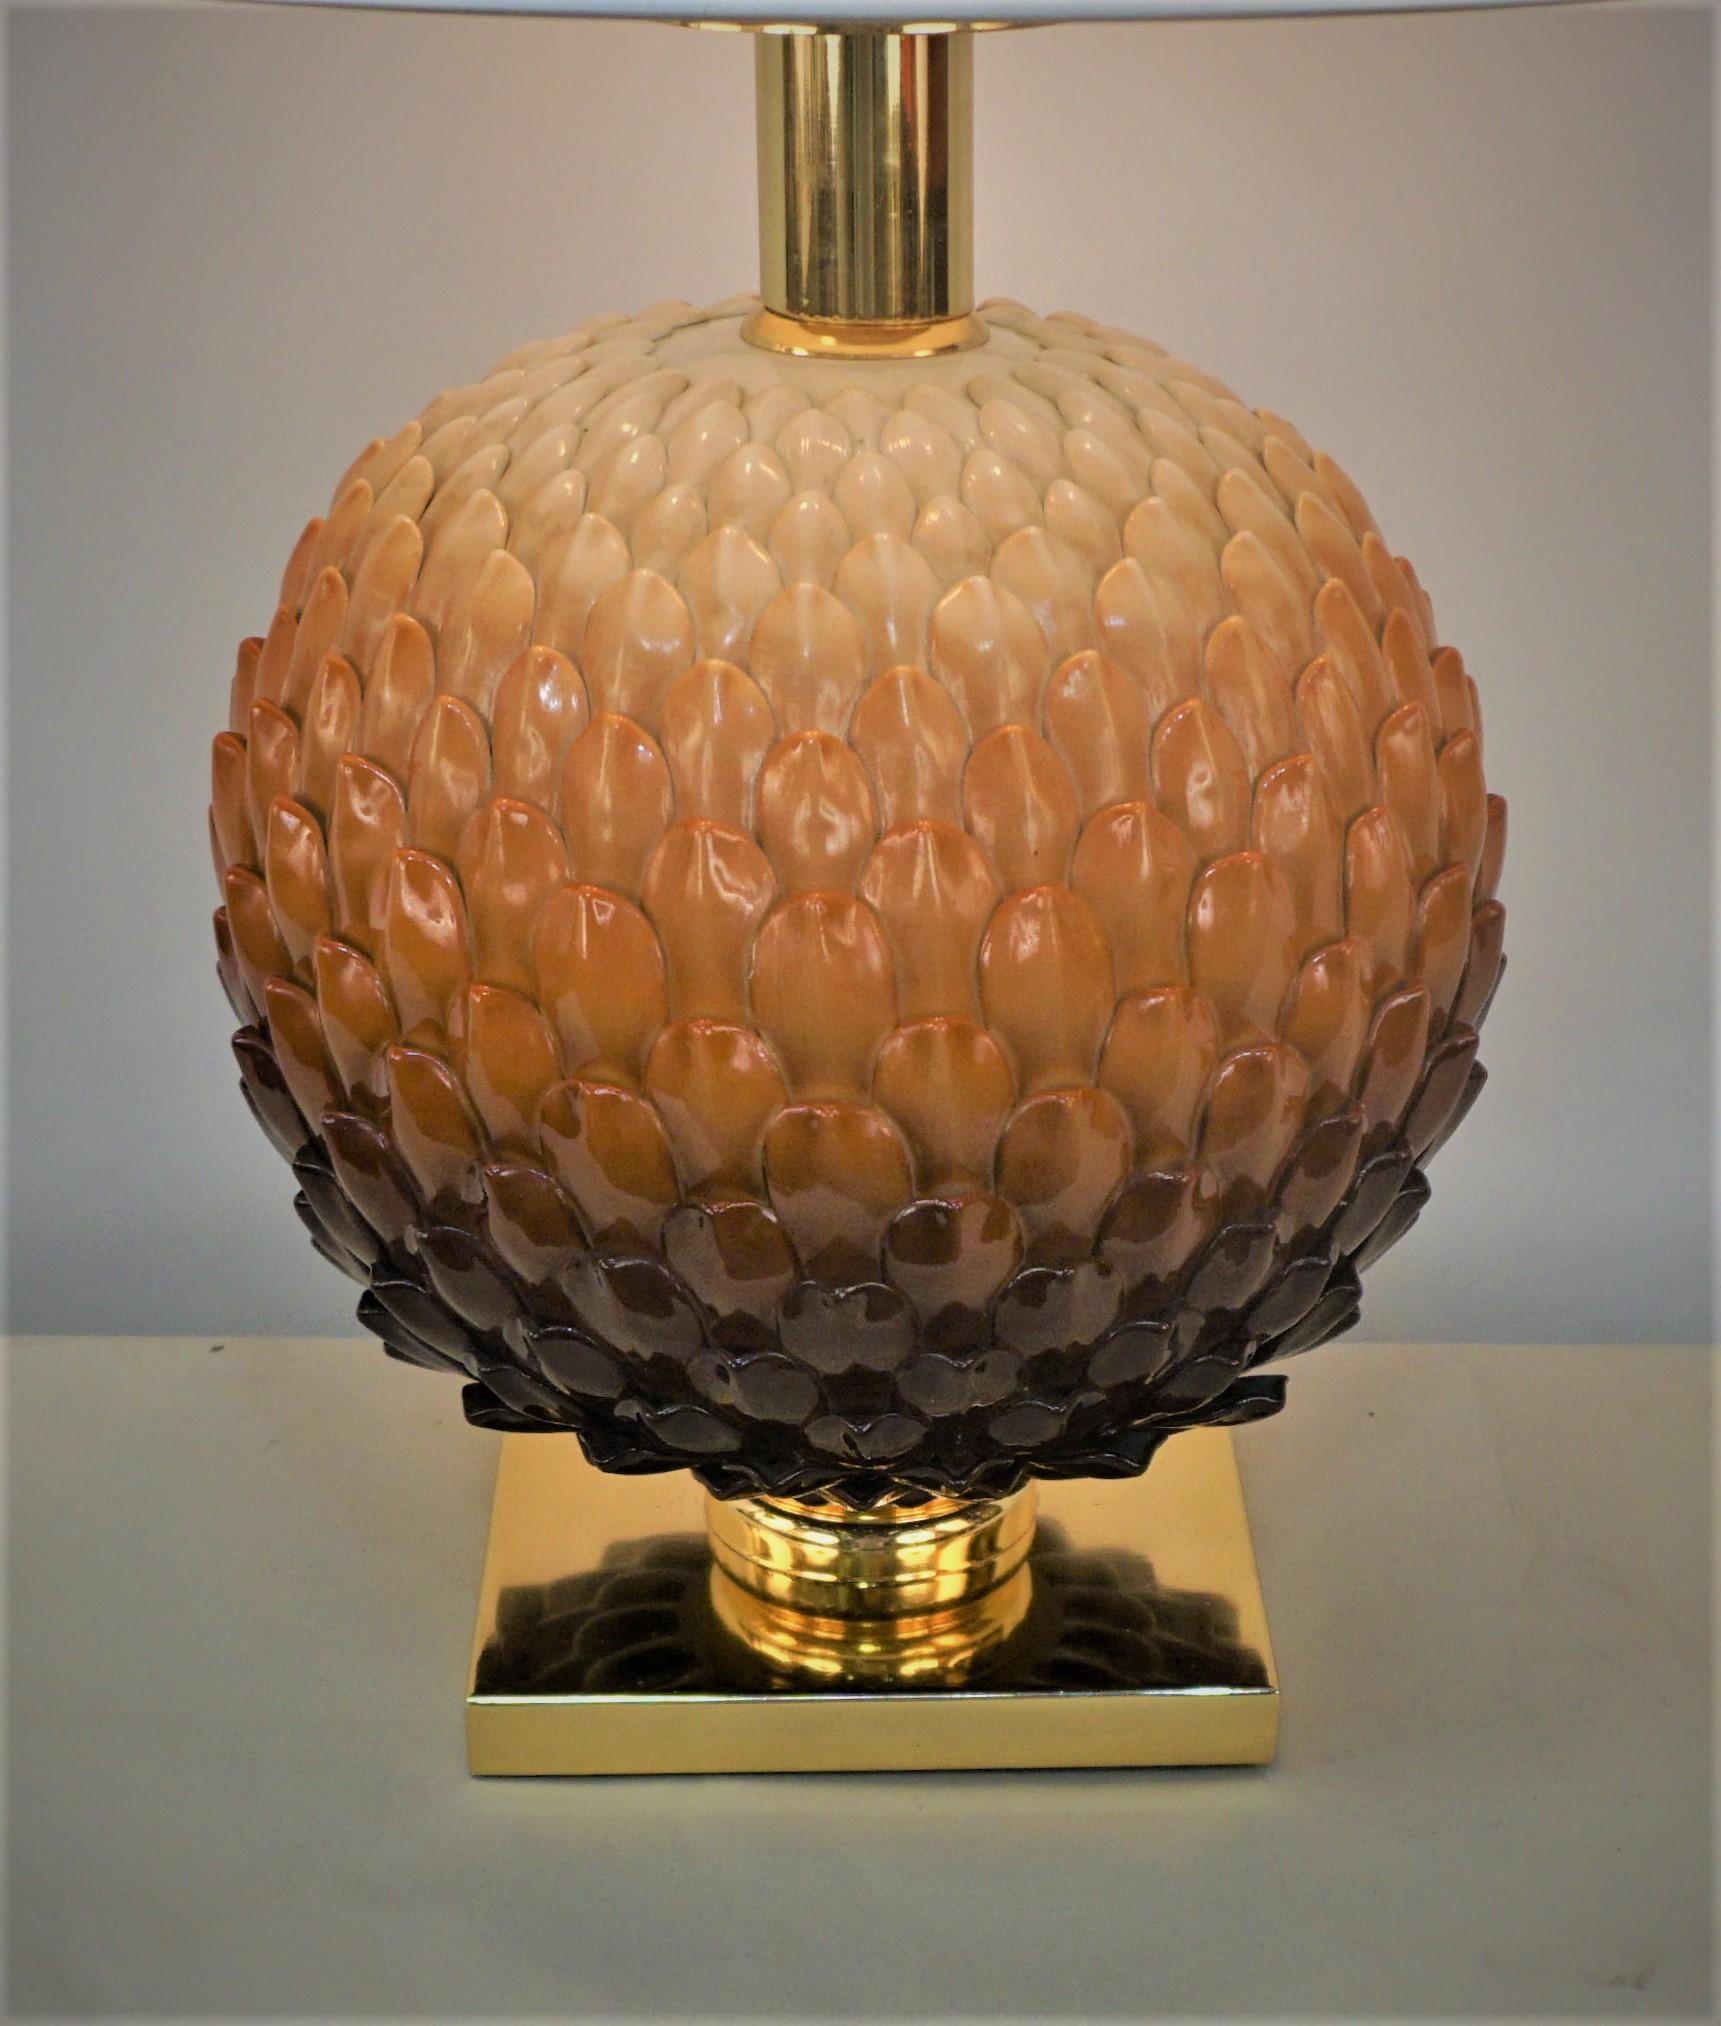 Modernes französisches Design aus braunem, rost- bis cremefarbenem Porzellan mit poliertem Sockel und Beschlägen aus Bonze.
Ausgestattet mit einem Lampenschirm aus Hartseide.